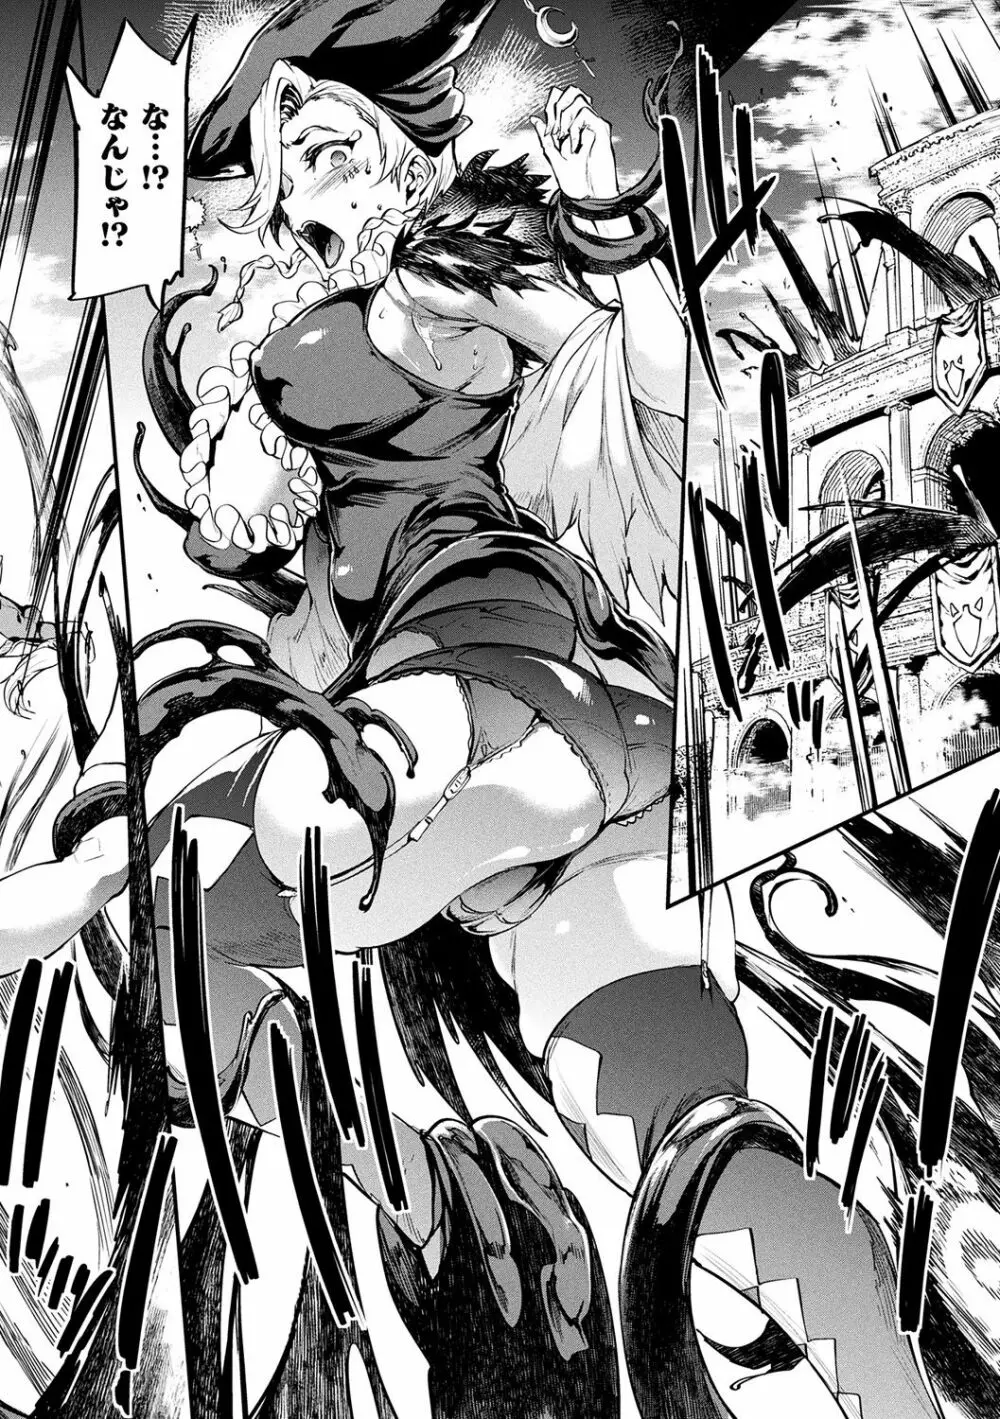 [エレクトさわる] 雷光神姫アイギスマギアII -PANDRA saga 3rd ignition- + 電子書籍特典デジタルポスター [DL版] 152ページ